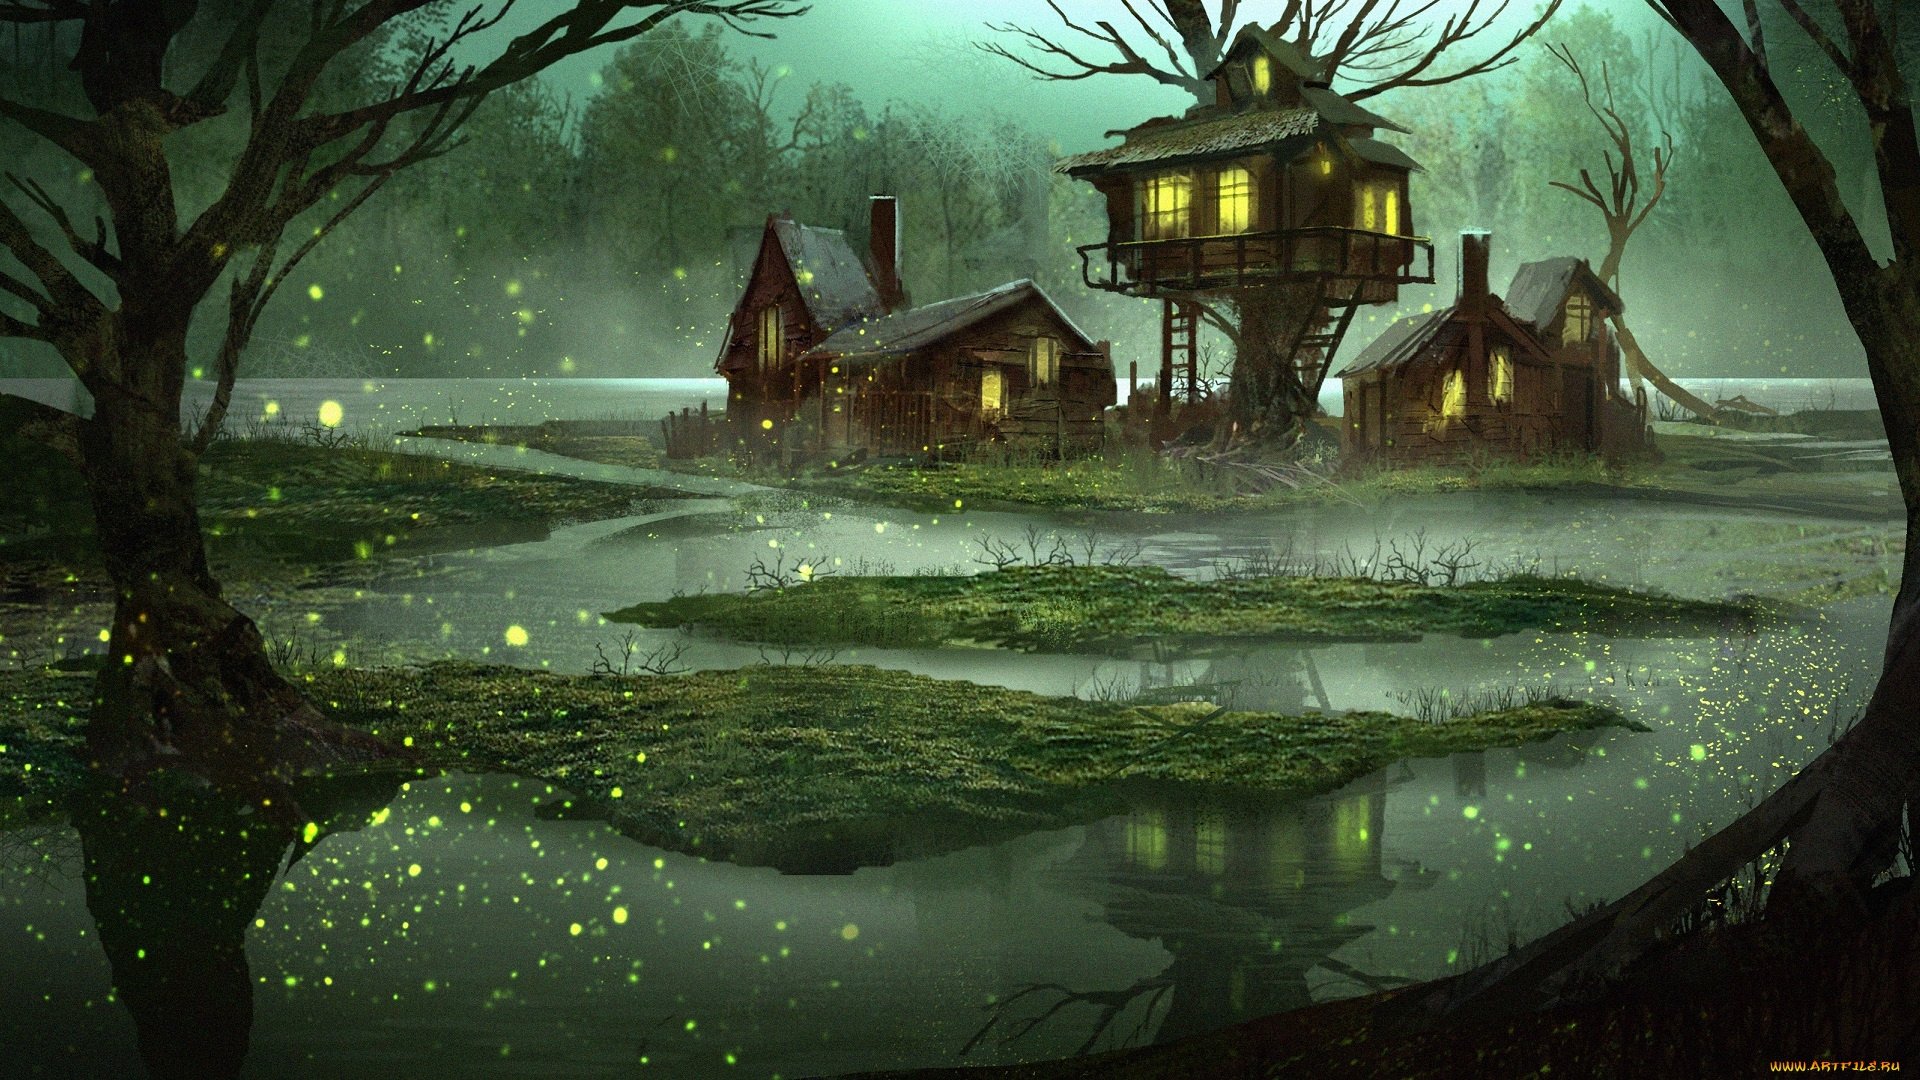 Swamp Wallpaper Image